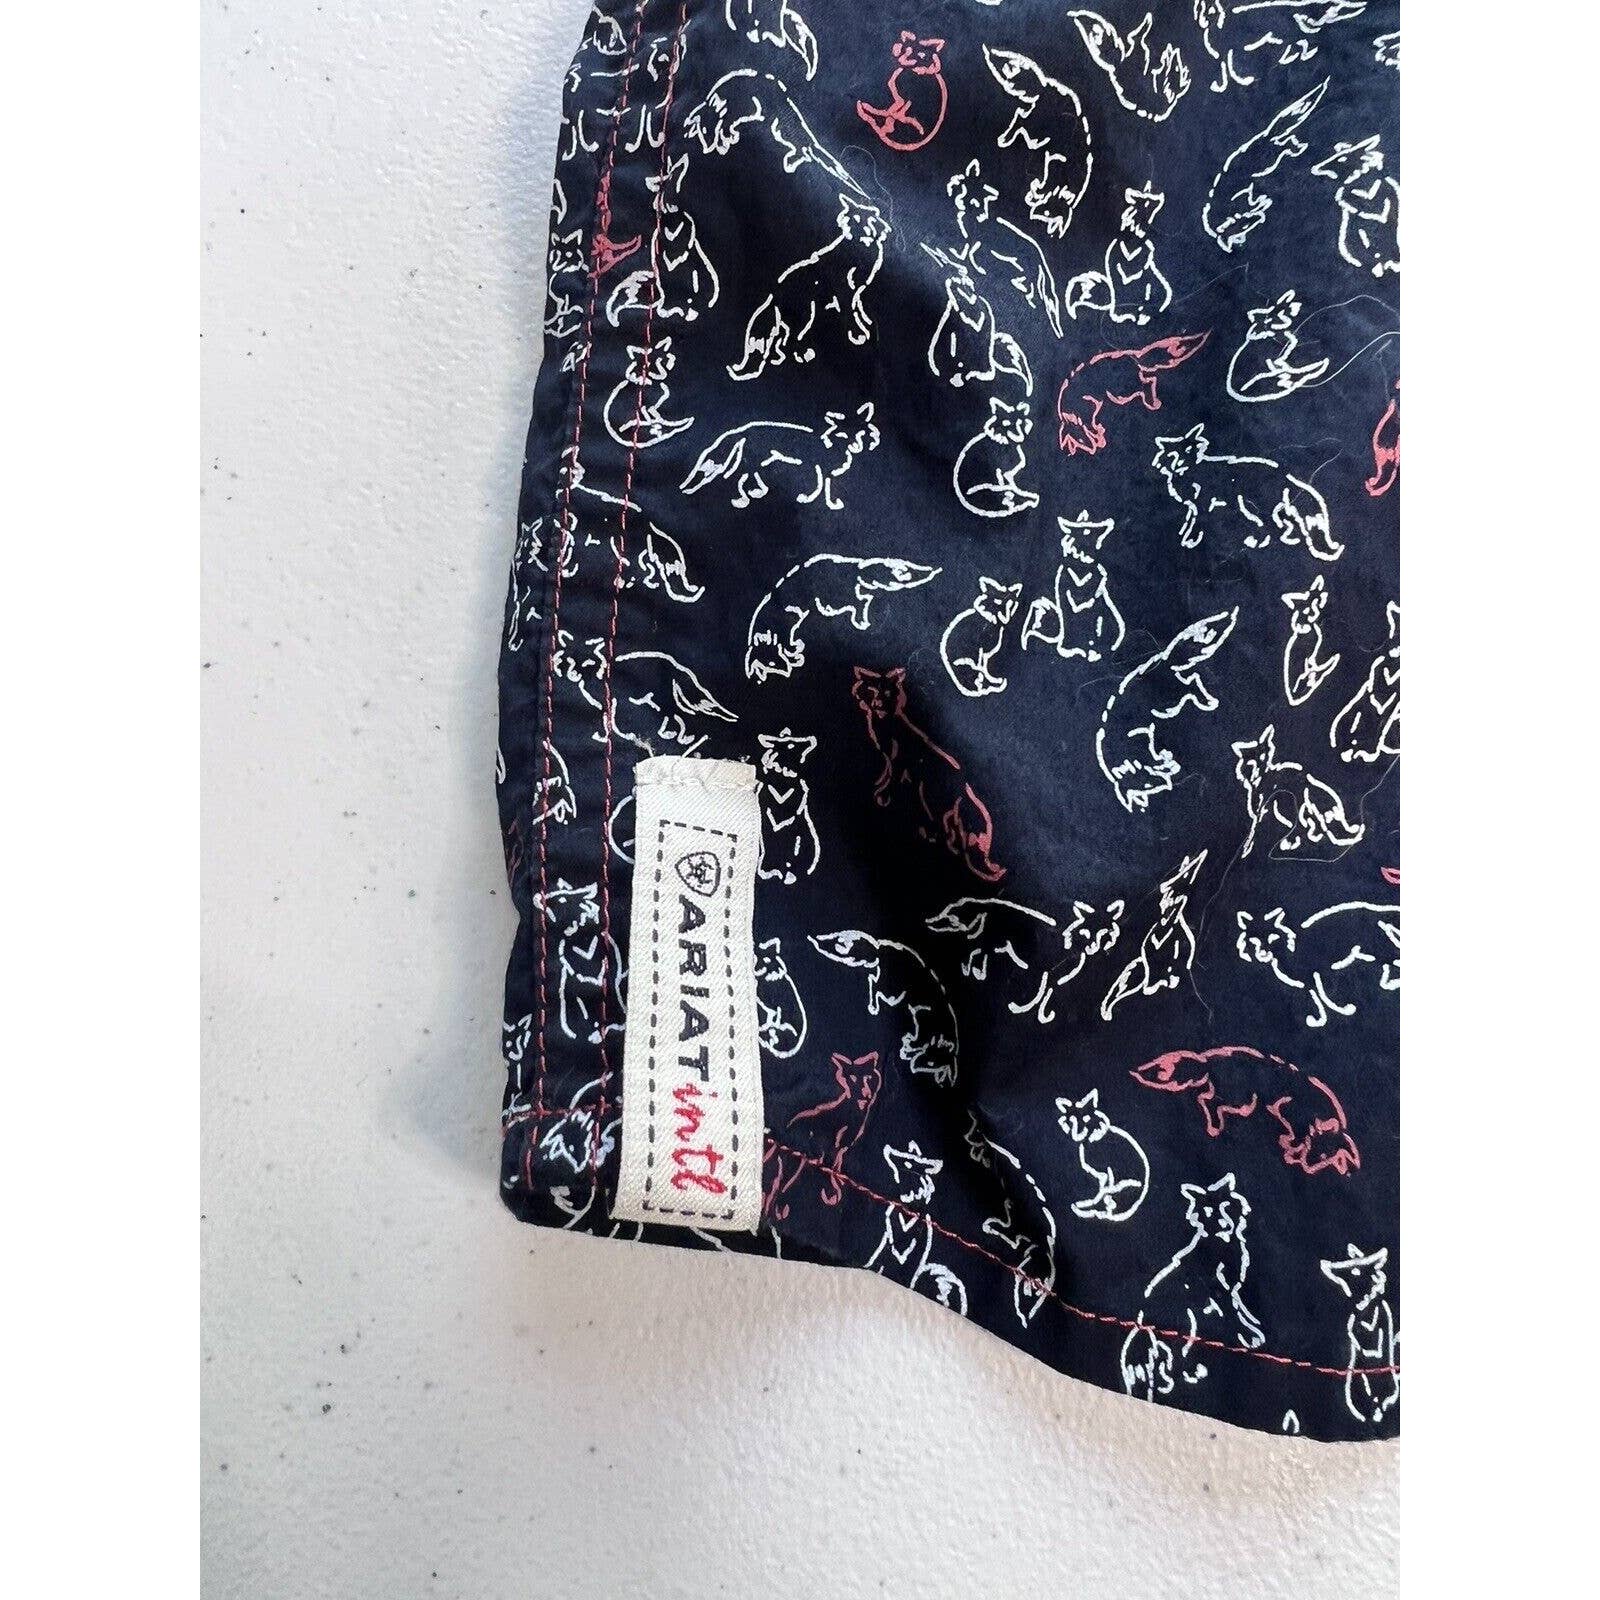 Ariat Foxy Button Up Shirt Women’s Medium Top Long Sleeves Navy Blue Cotton